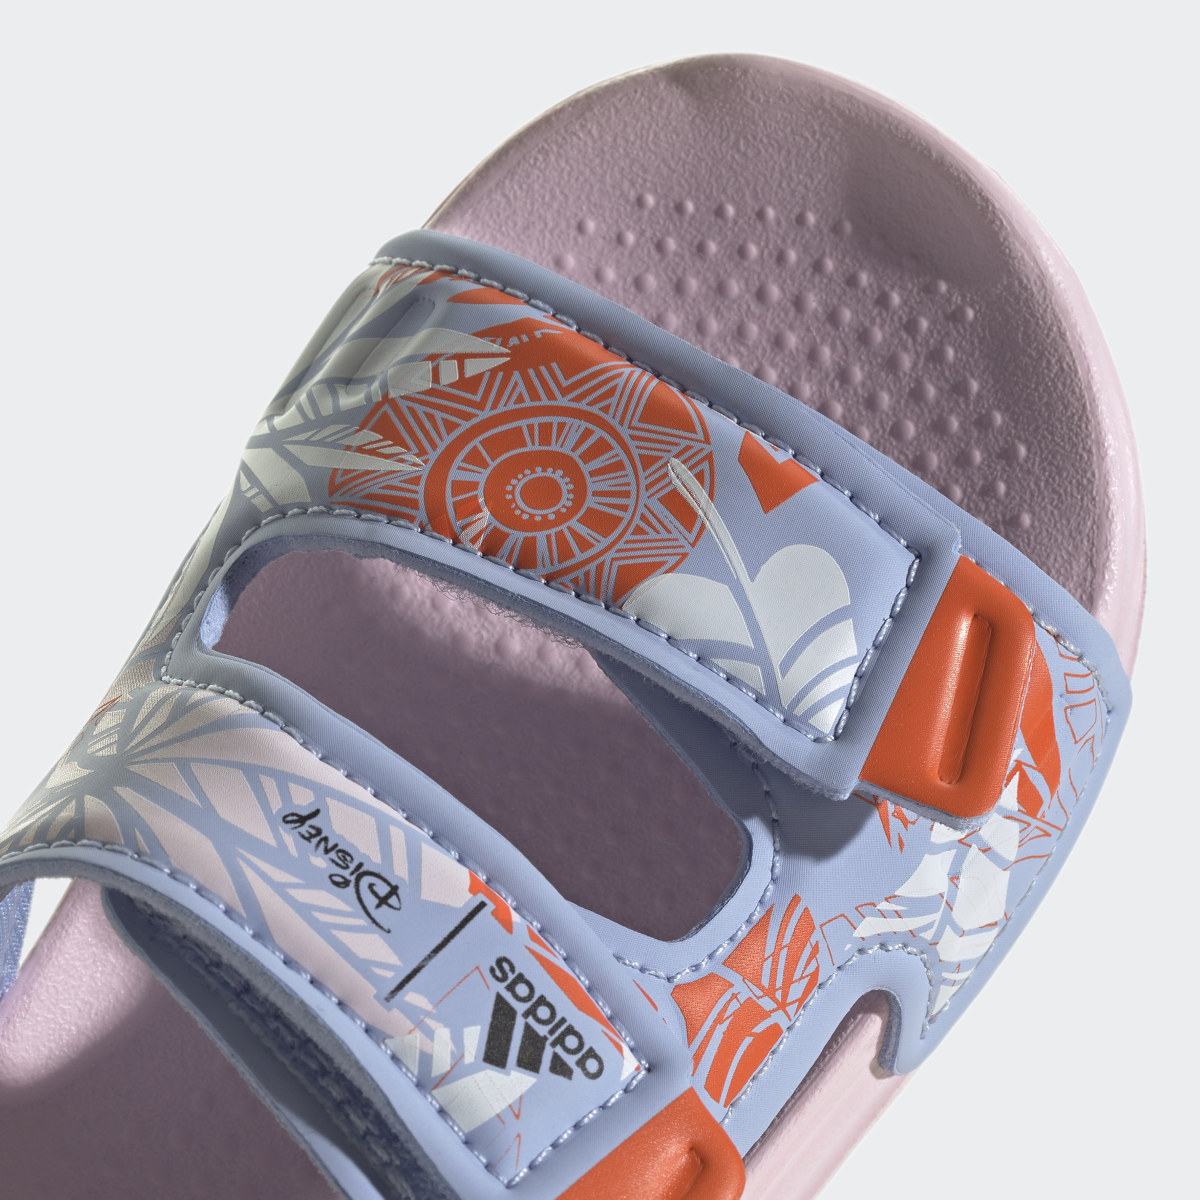 Adidas Sandálias de Natação AltaSwim Vaiana adidas x Disney. 10